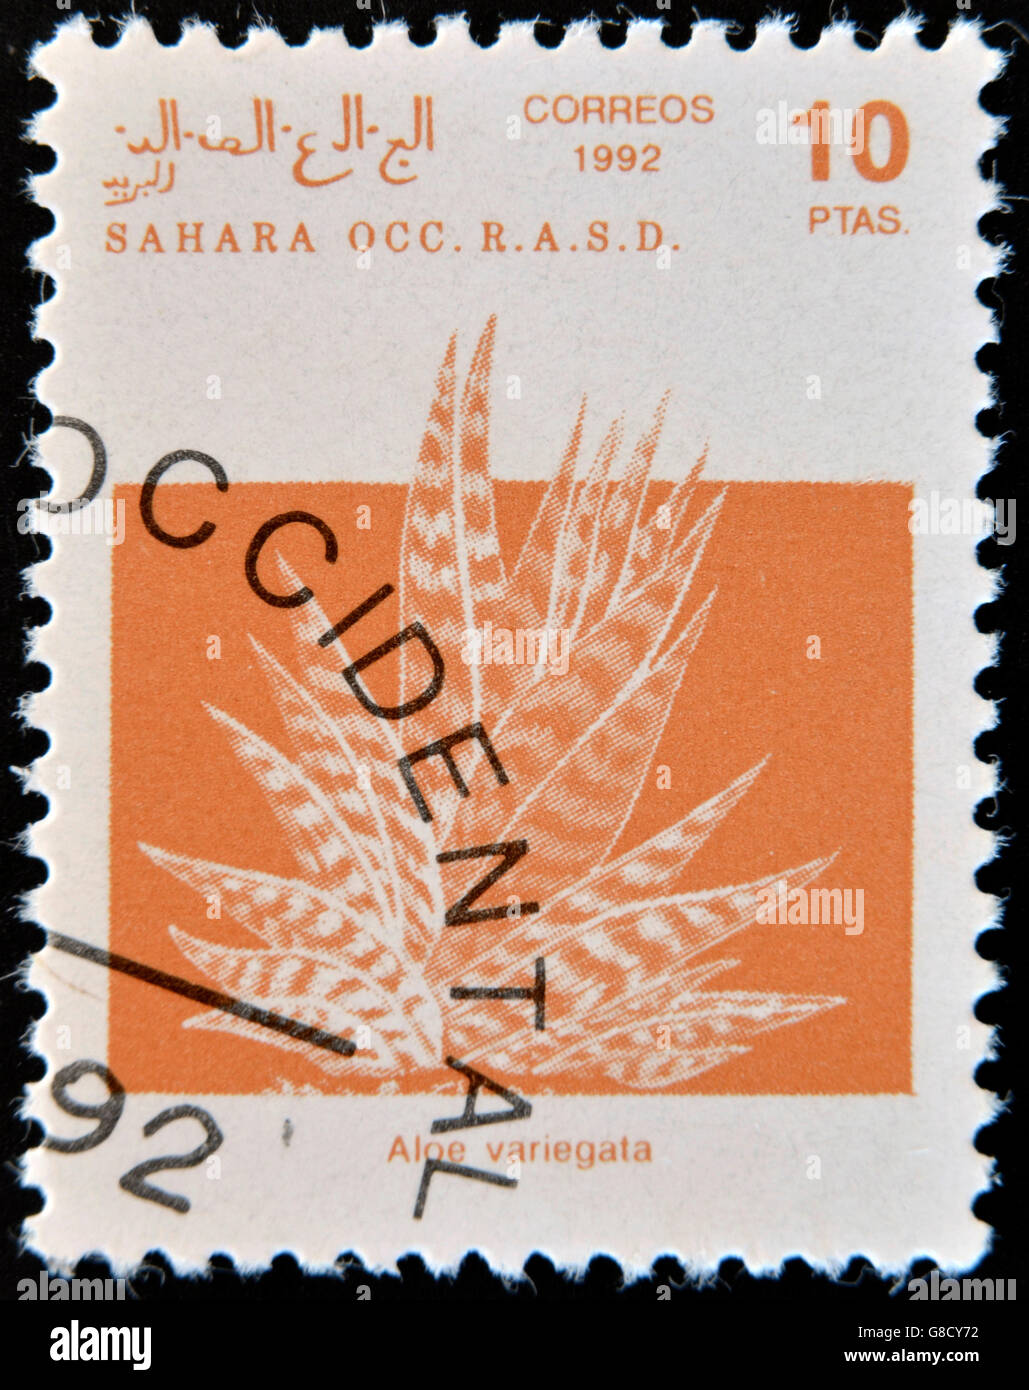 SAHARA OCCIDENTAL - circa 1992 : timbre imprimé en République Arabe Sahraouie Démocratique (RASD), dépeint l'Aloe variegata, vers 1992 Banque D'Images